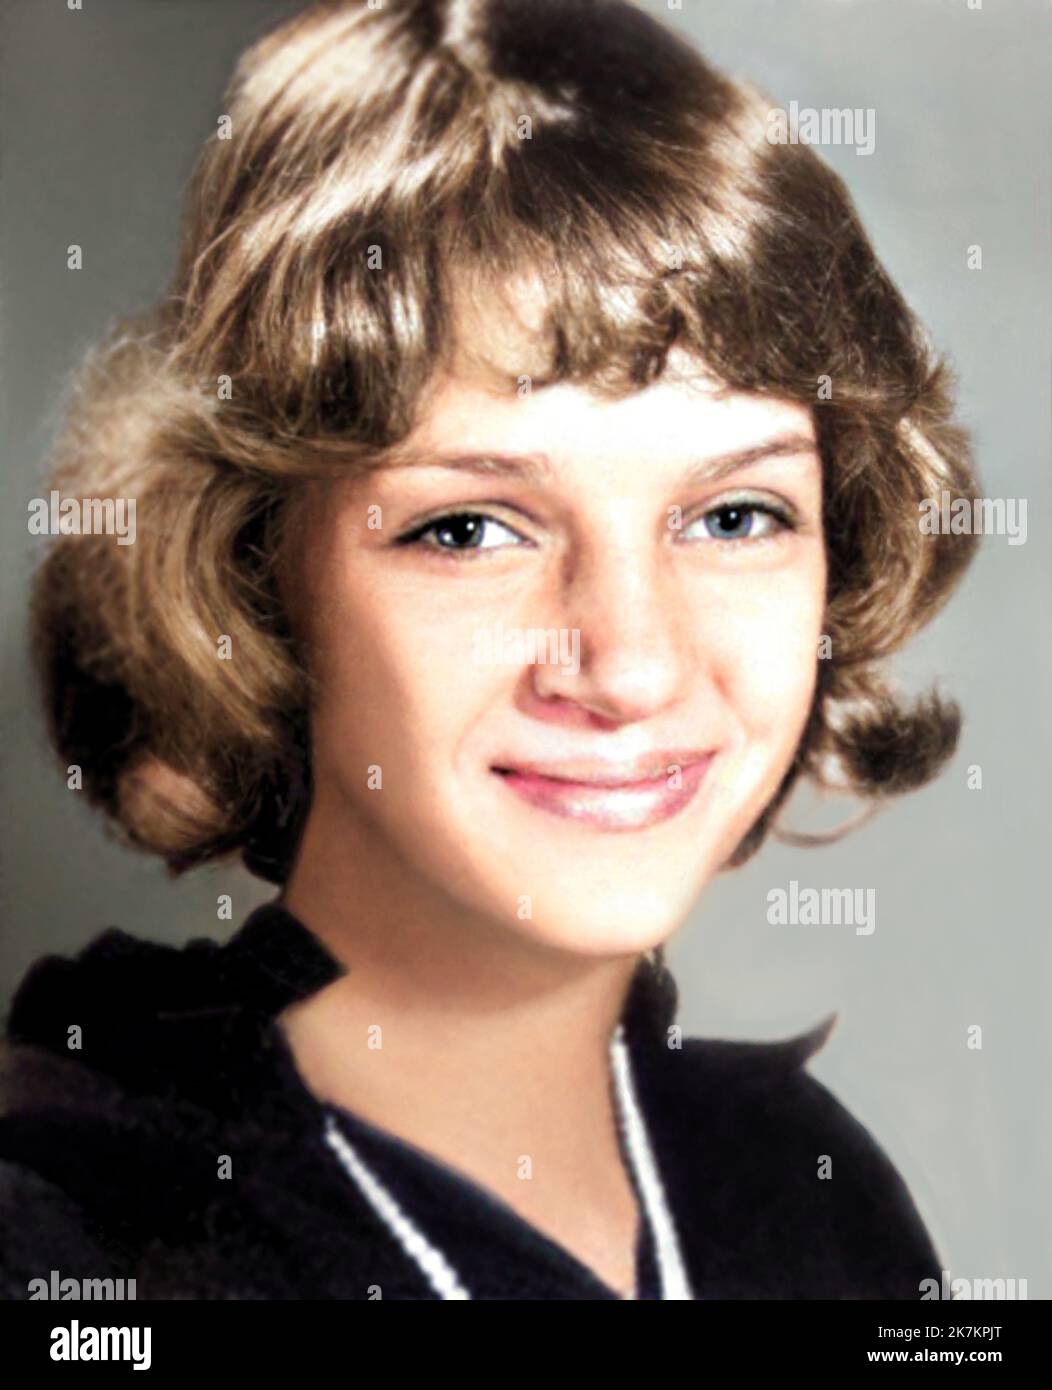 1985 , BOSTON , USA : l'attrice americana UMA THURMAN ( data di nascita 29 aprile 1970 ) quando era una ragazza giovane di 15 anni , foto dalla scuola di annuario . Fotografo sconosciuto. COLORATO DIGITALMENTE . - STORIA - FOTO STORICHE - ATTORE - FILM - CINEMA - personalità da giovani da giovani - personalità quando era giovane - ADOLESCENTE - INFANZIA - INFANZIA - BAMBINO - BAMBINI - RAGAZZA - sorriso - sorriso - sorriso --- ARCHIVIO GBB Foto Stock